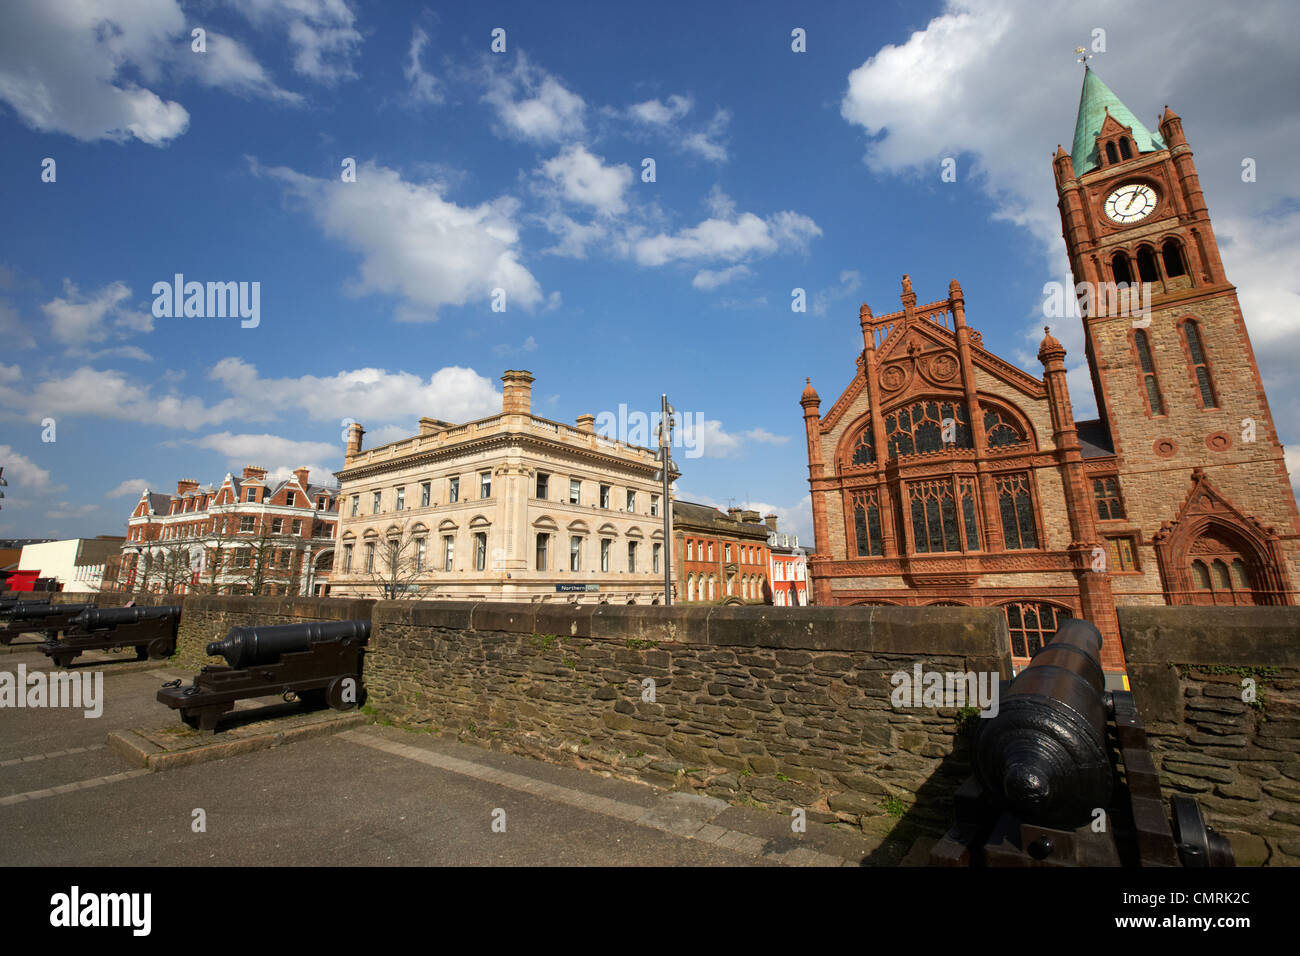 Derrys pareti e la Guildhall Derry City County Londonderry Irlanda del Nord Regno Unito. Foto Stock